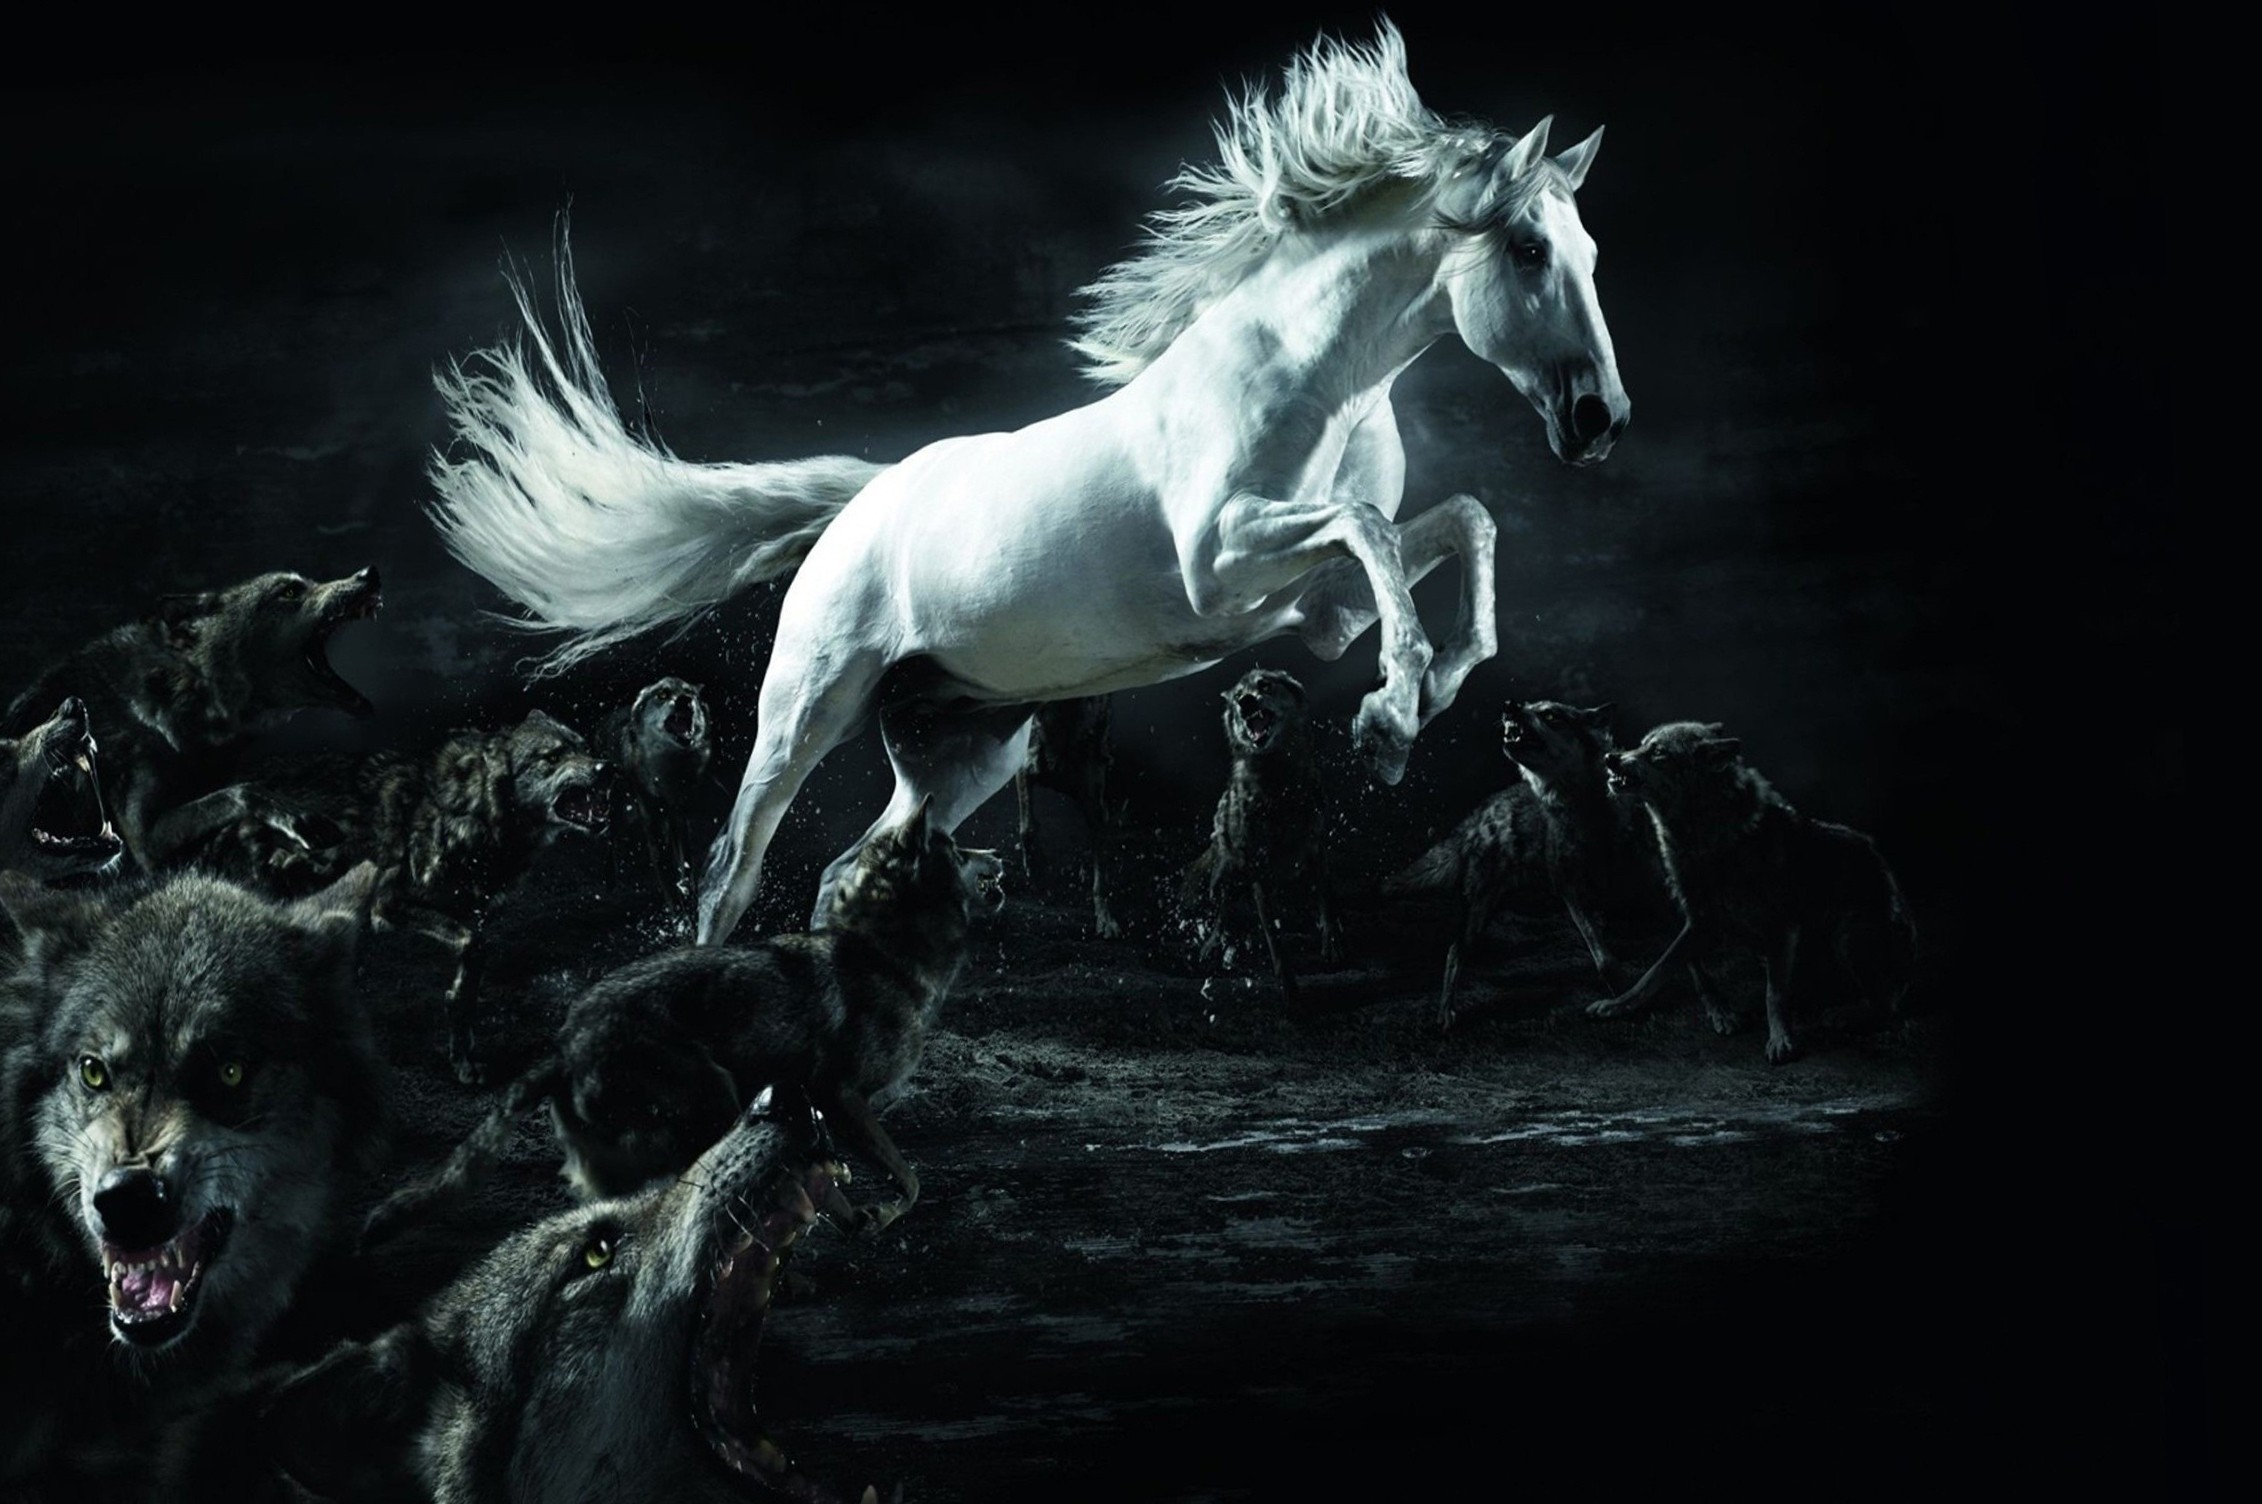 fond d'écran intelligent hd,cheval,ténèbres,noir et blanc,étalon,personnage fictif